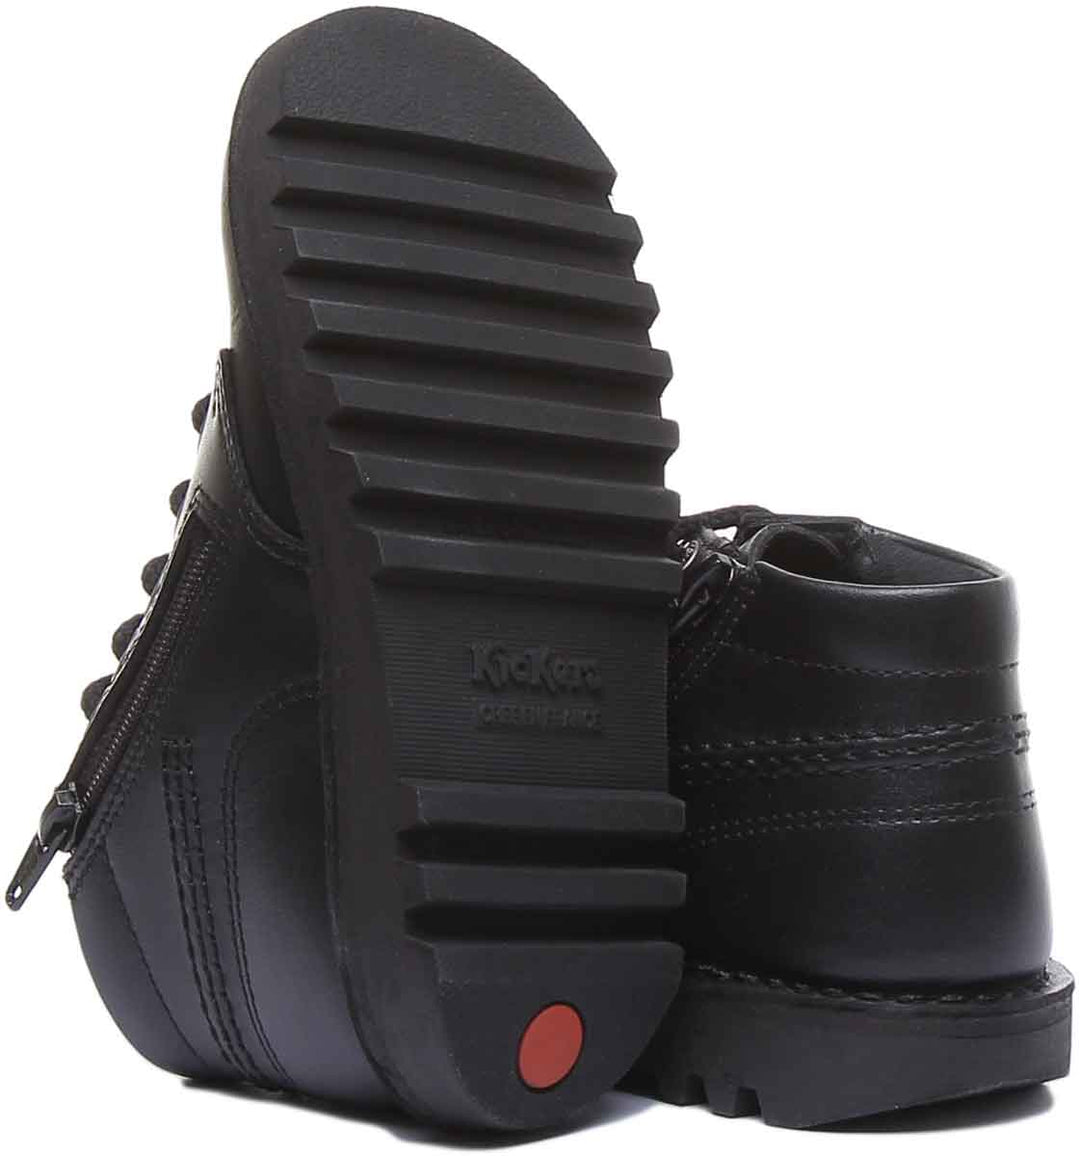 Kickers Kick Hi Zip In Black in Junior Size UK 12.5 - 2.5